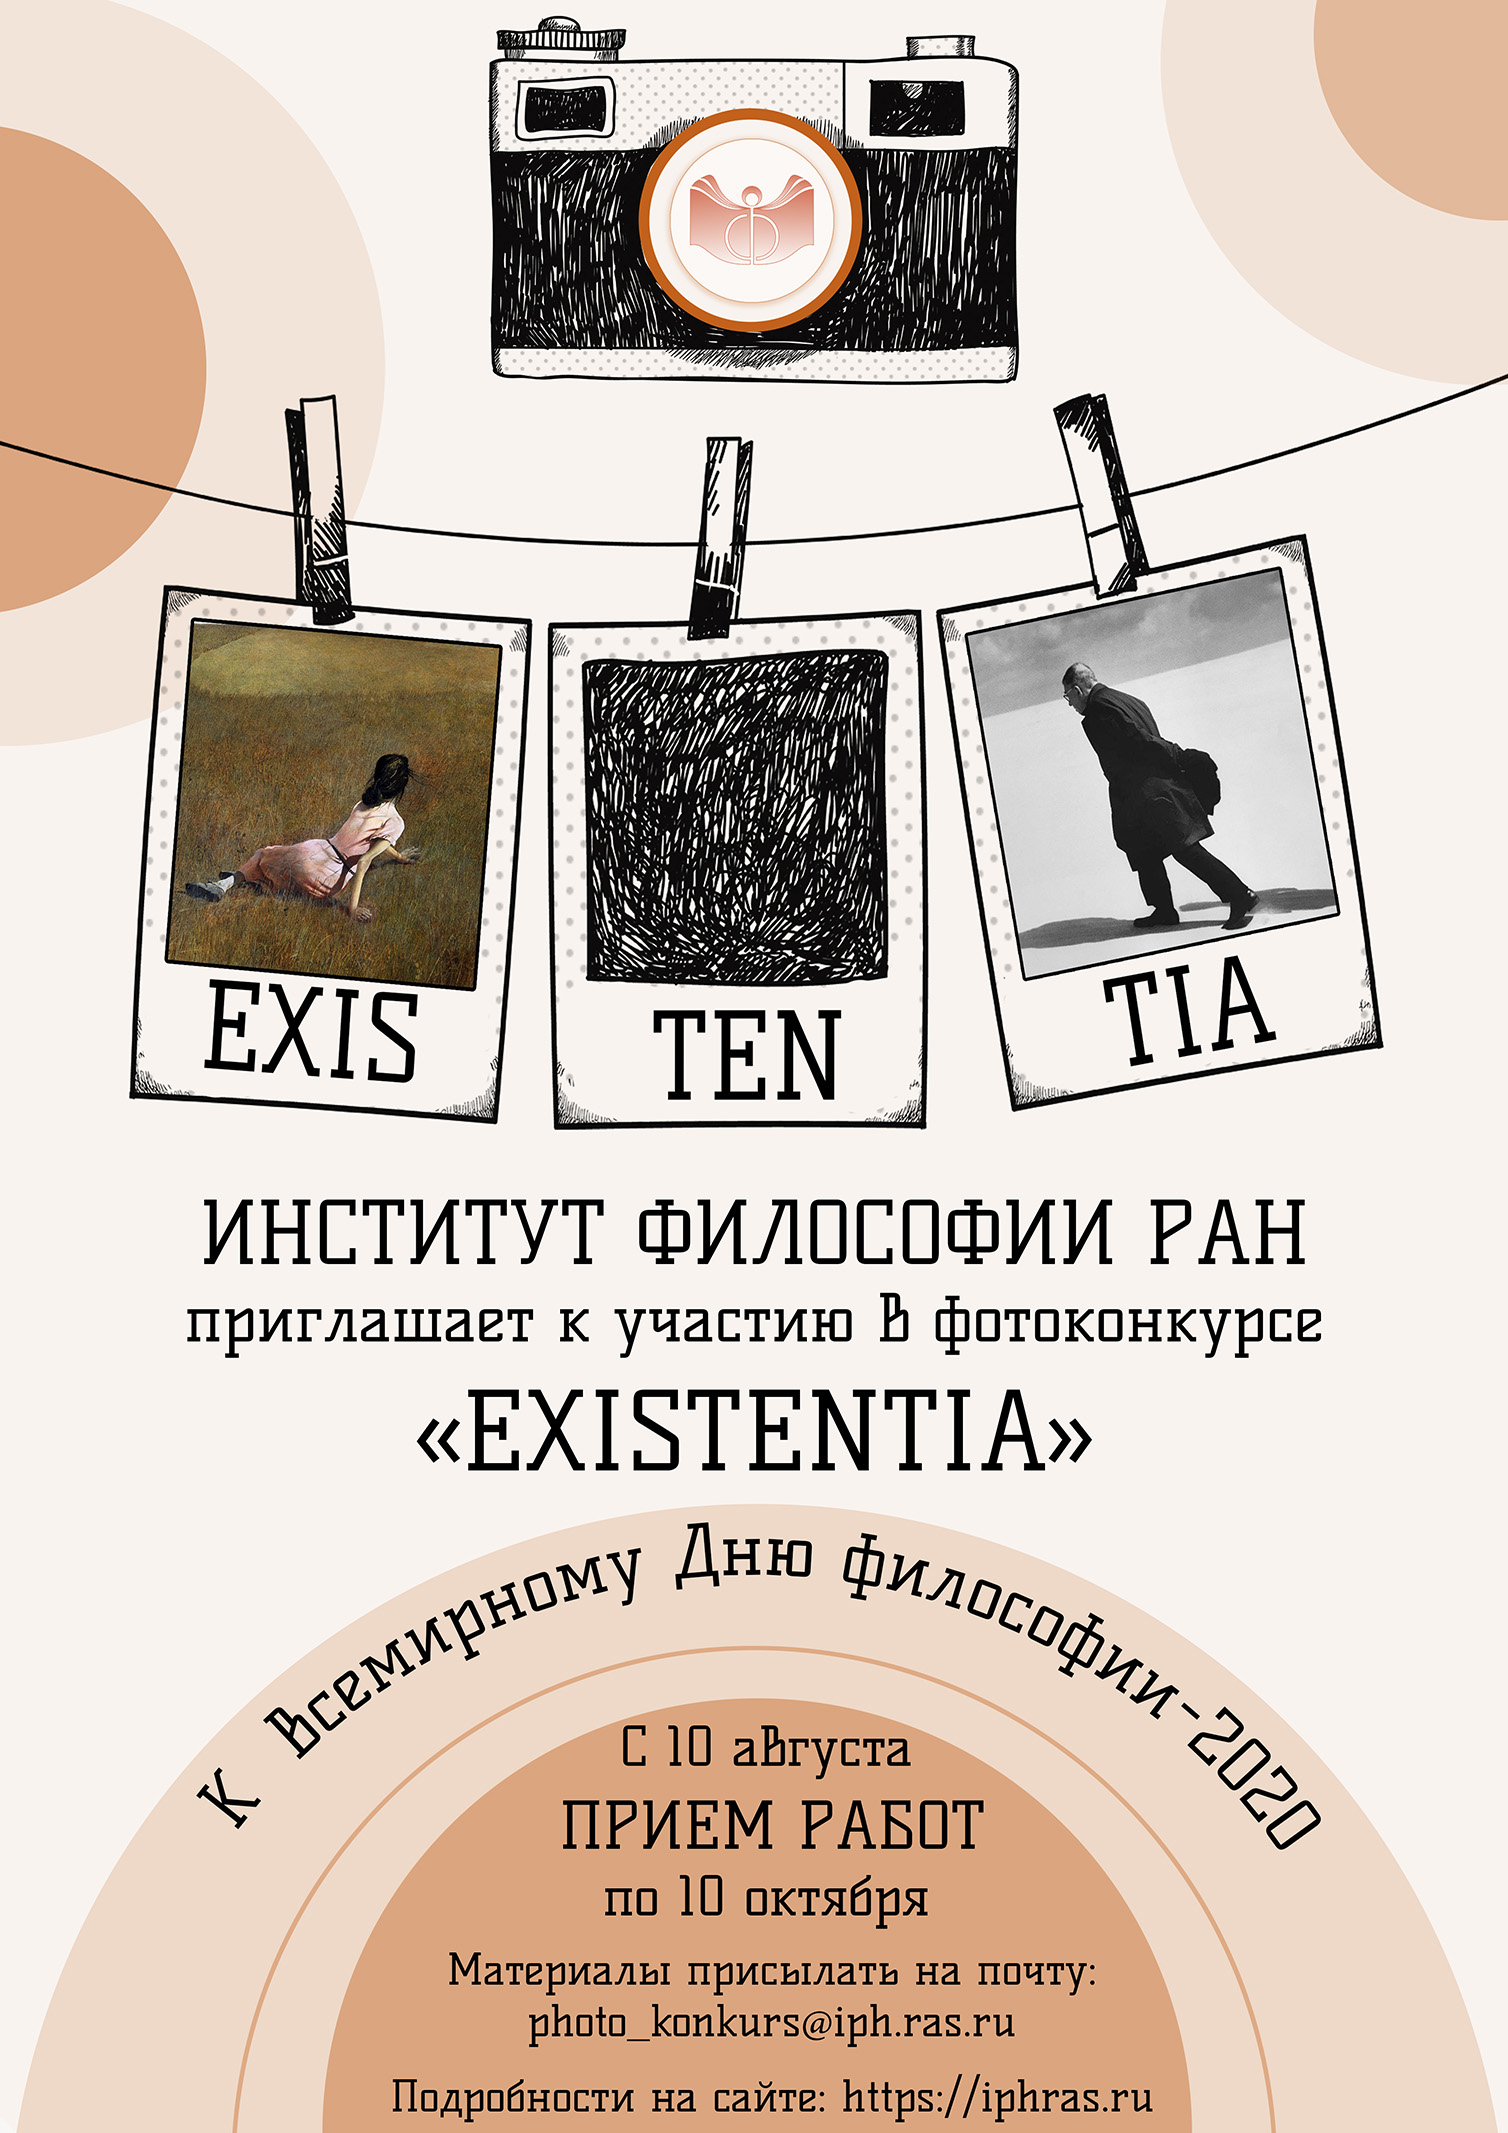 Конкурс фототворчества «EXISTENTIA», 10.08.2020–10.10.2020.